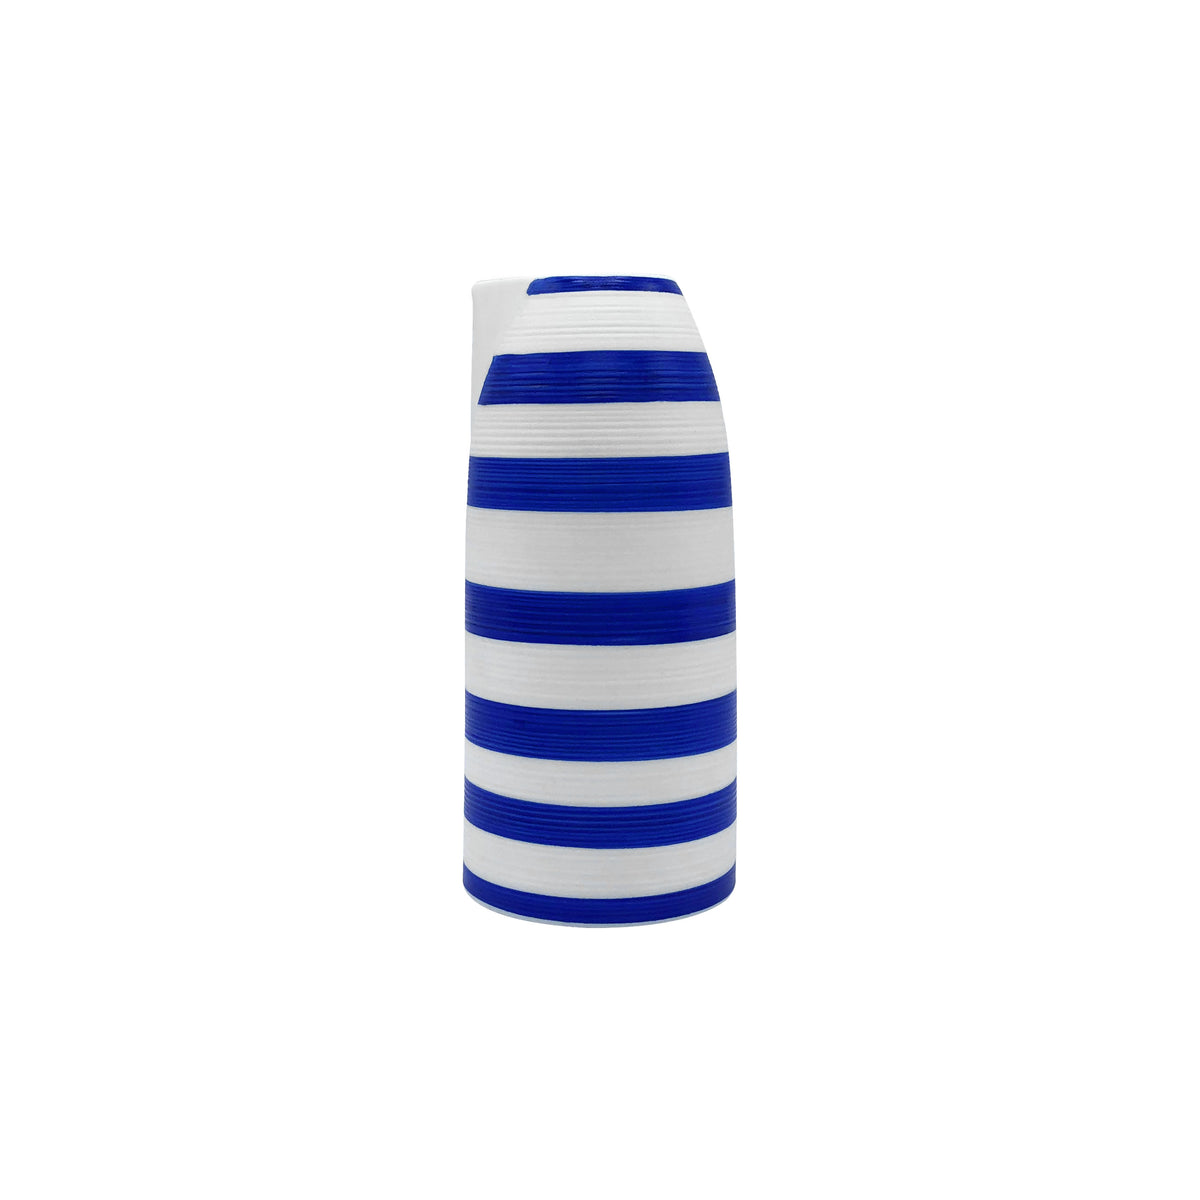 HEMISPHERE Striped Royal Blue - Sake jug, large